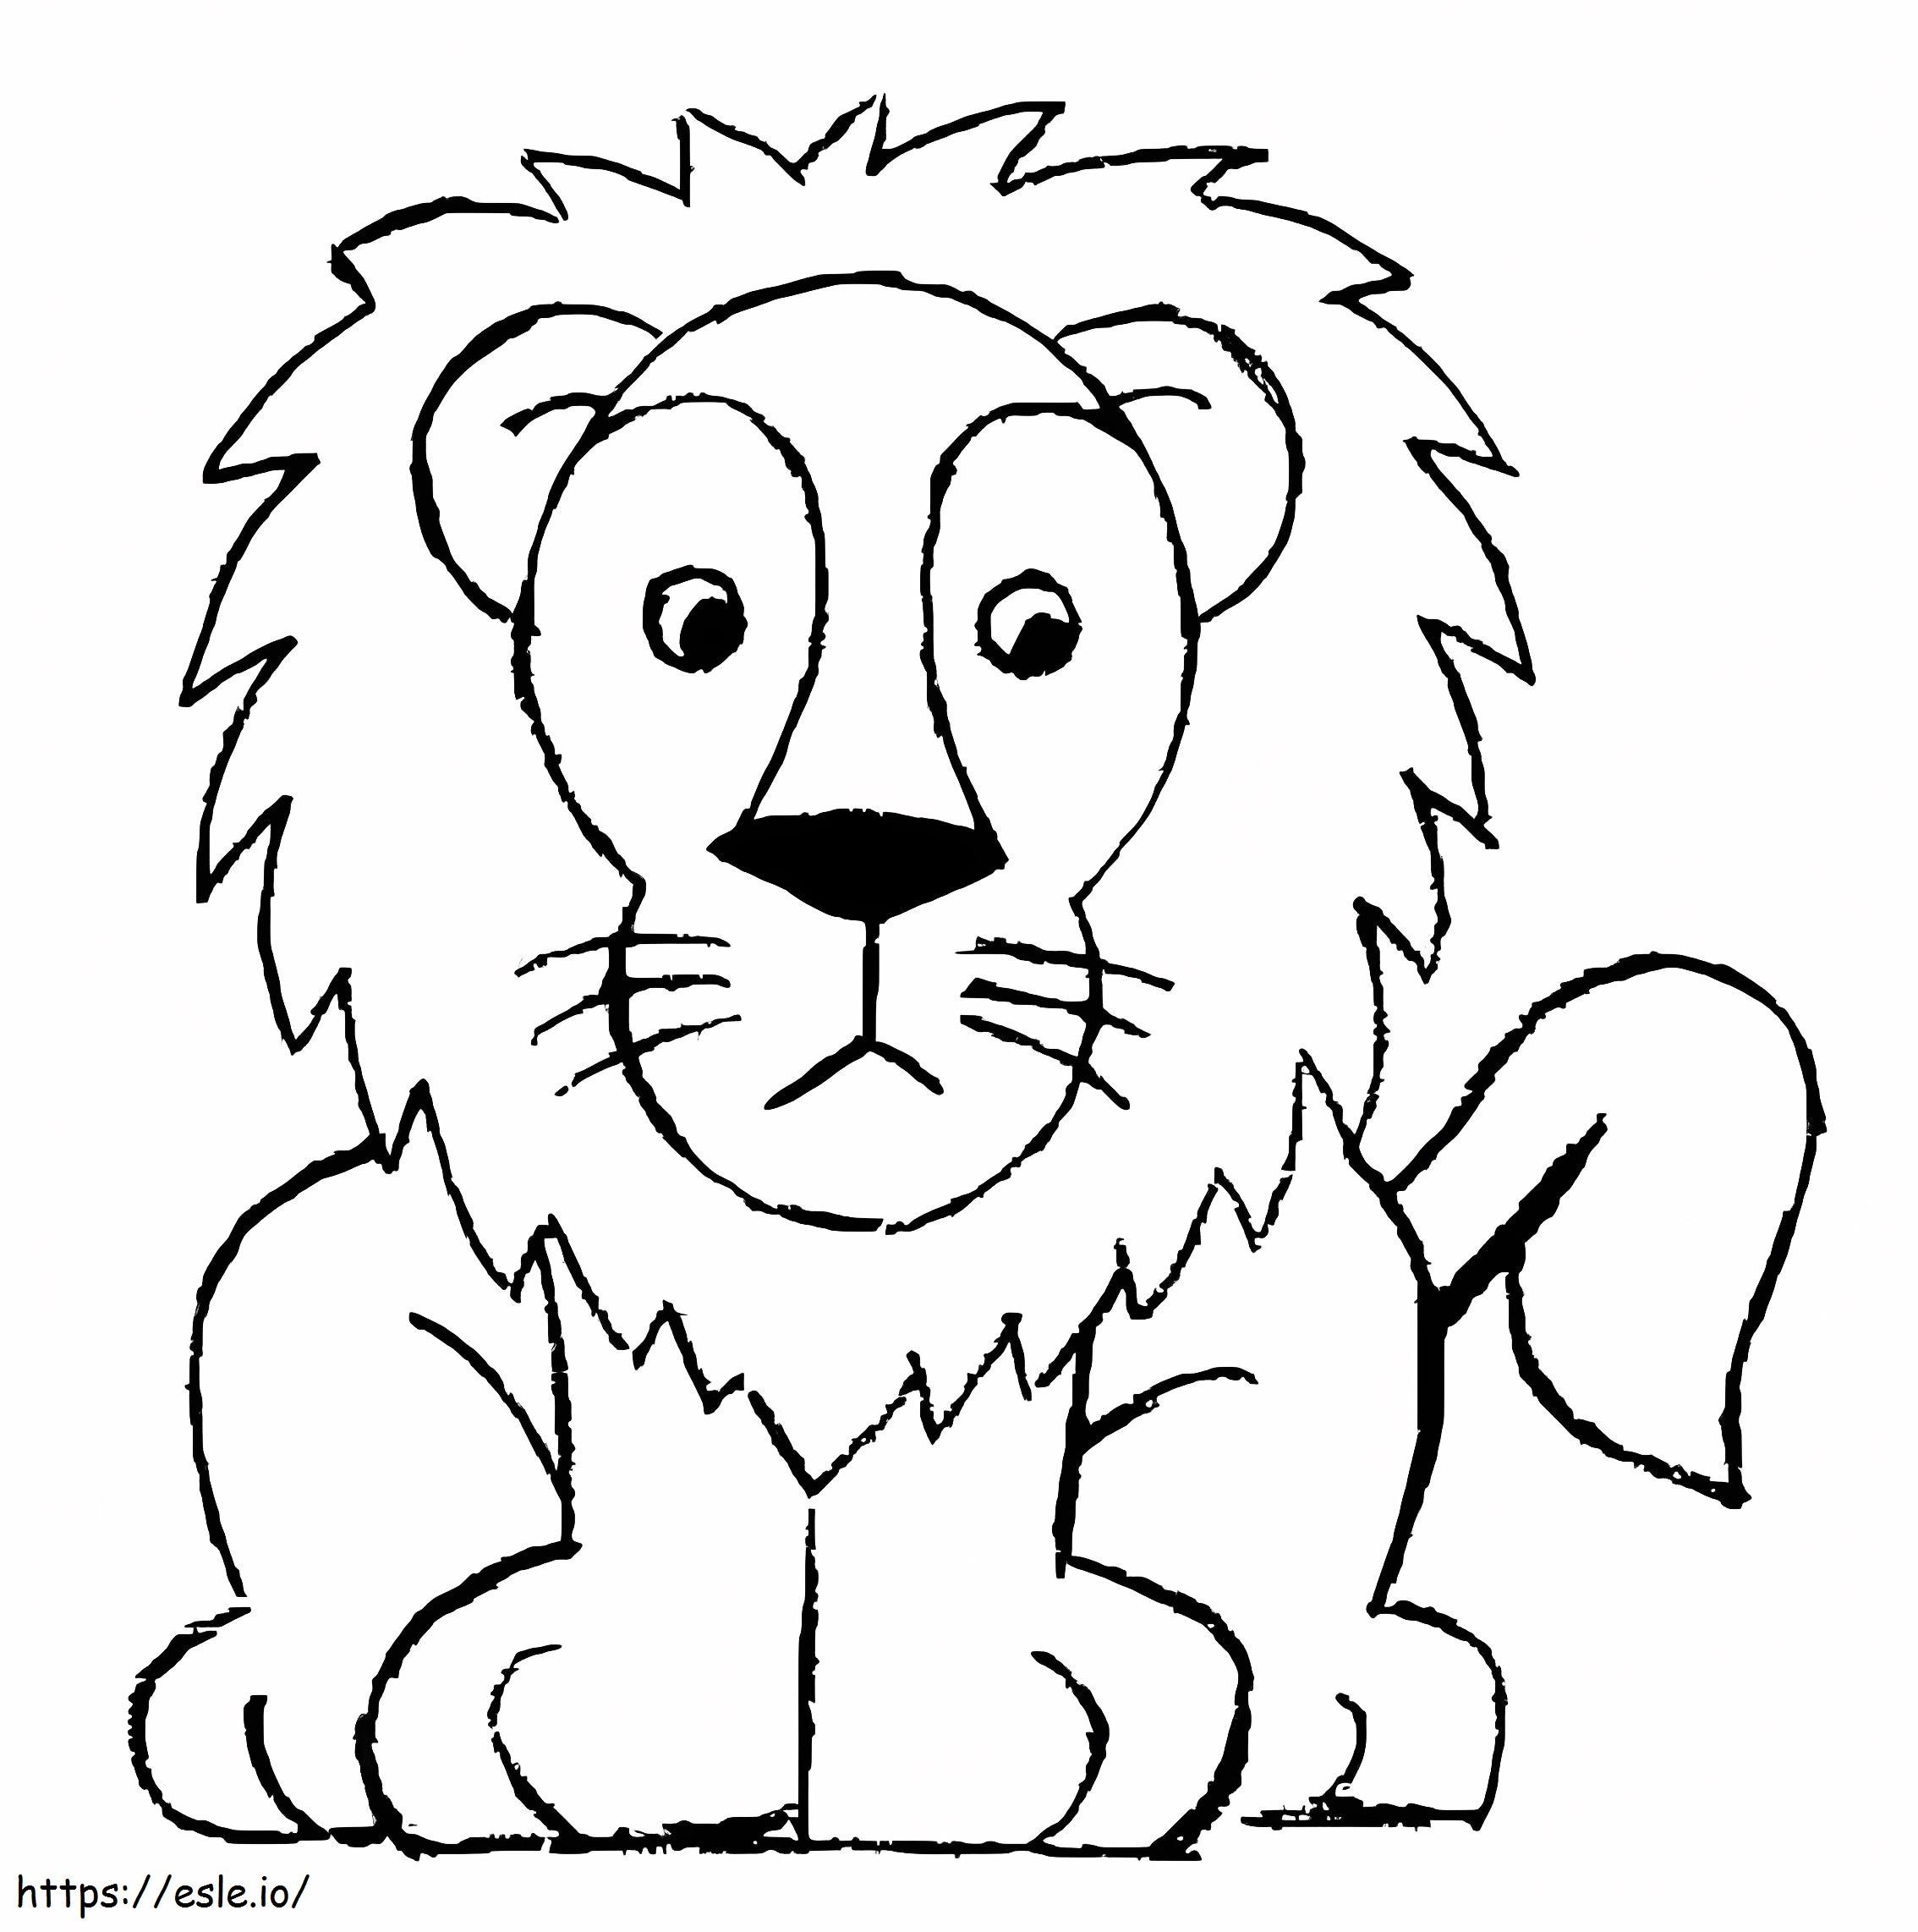 Łatwy szkic lwa kolorowanka